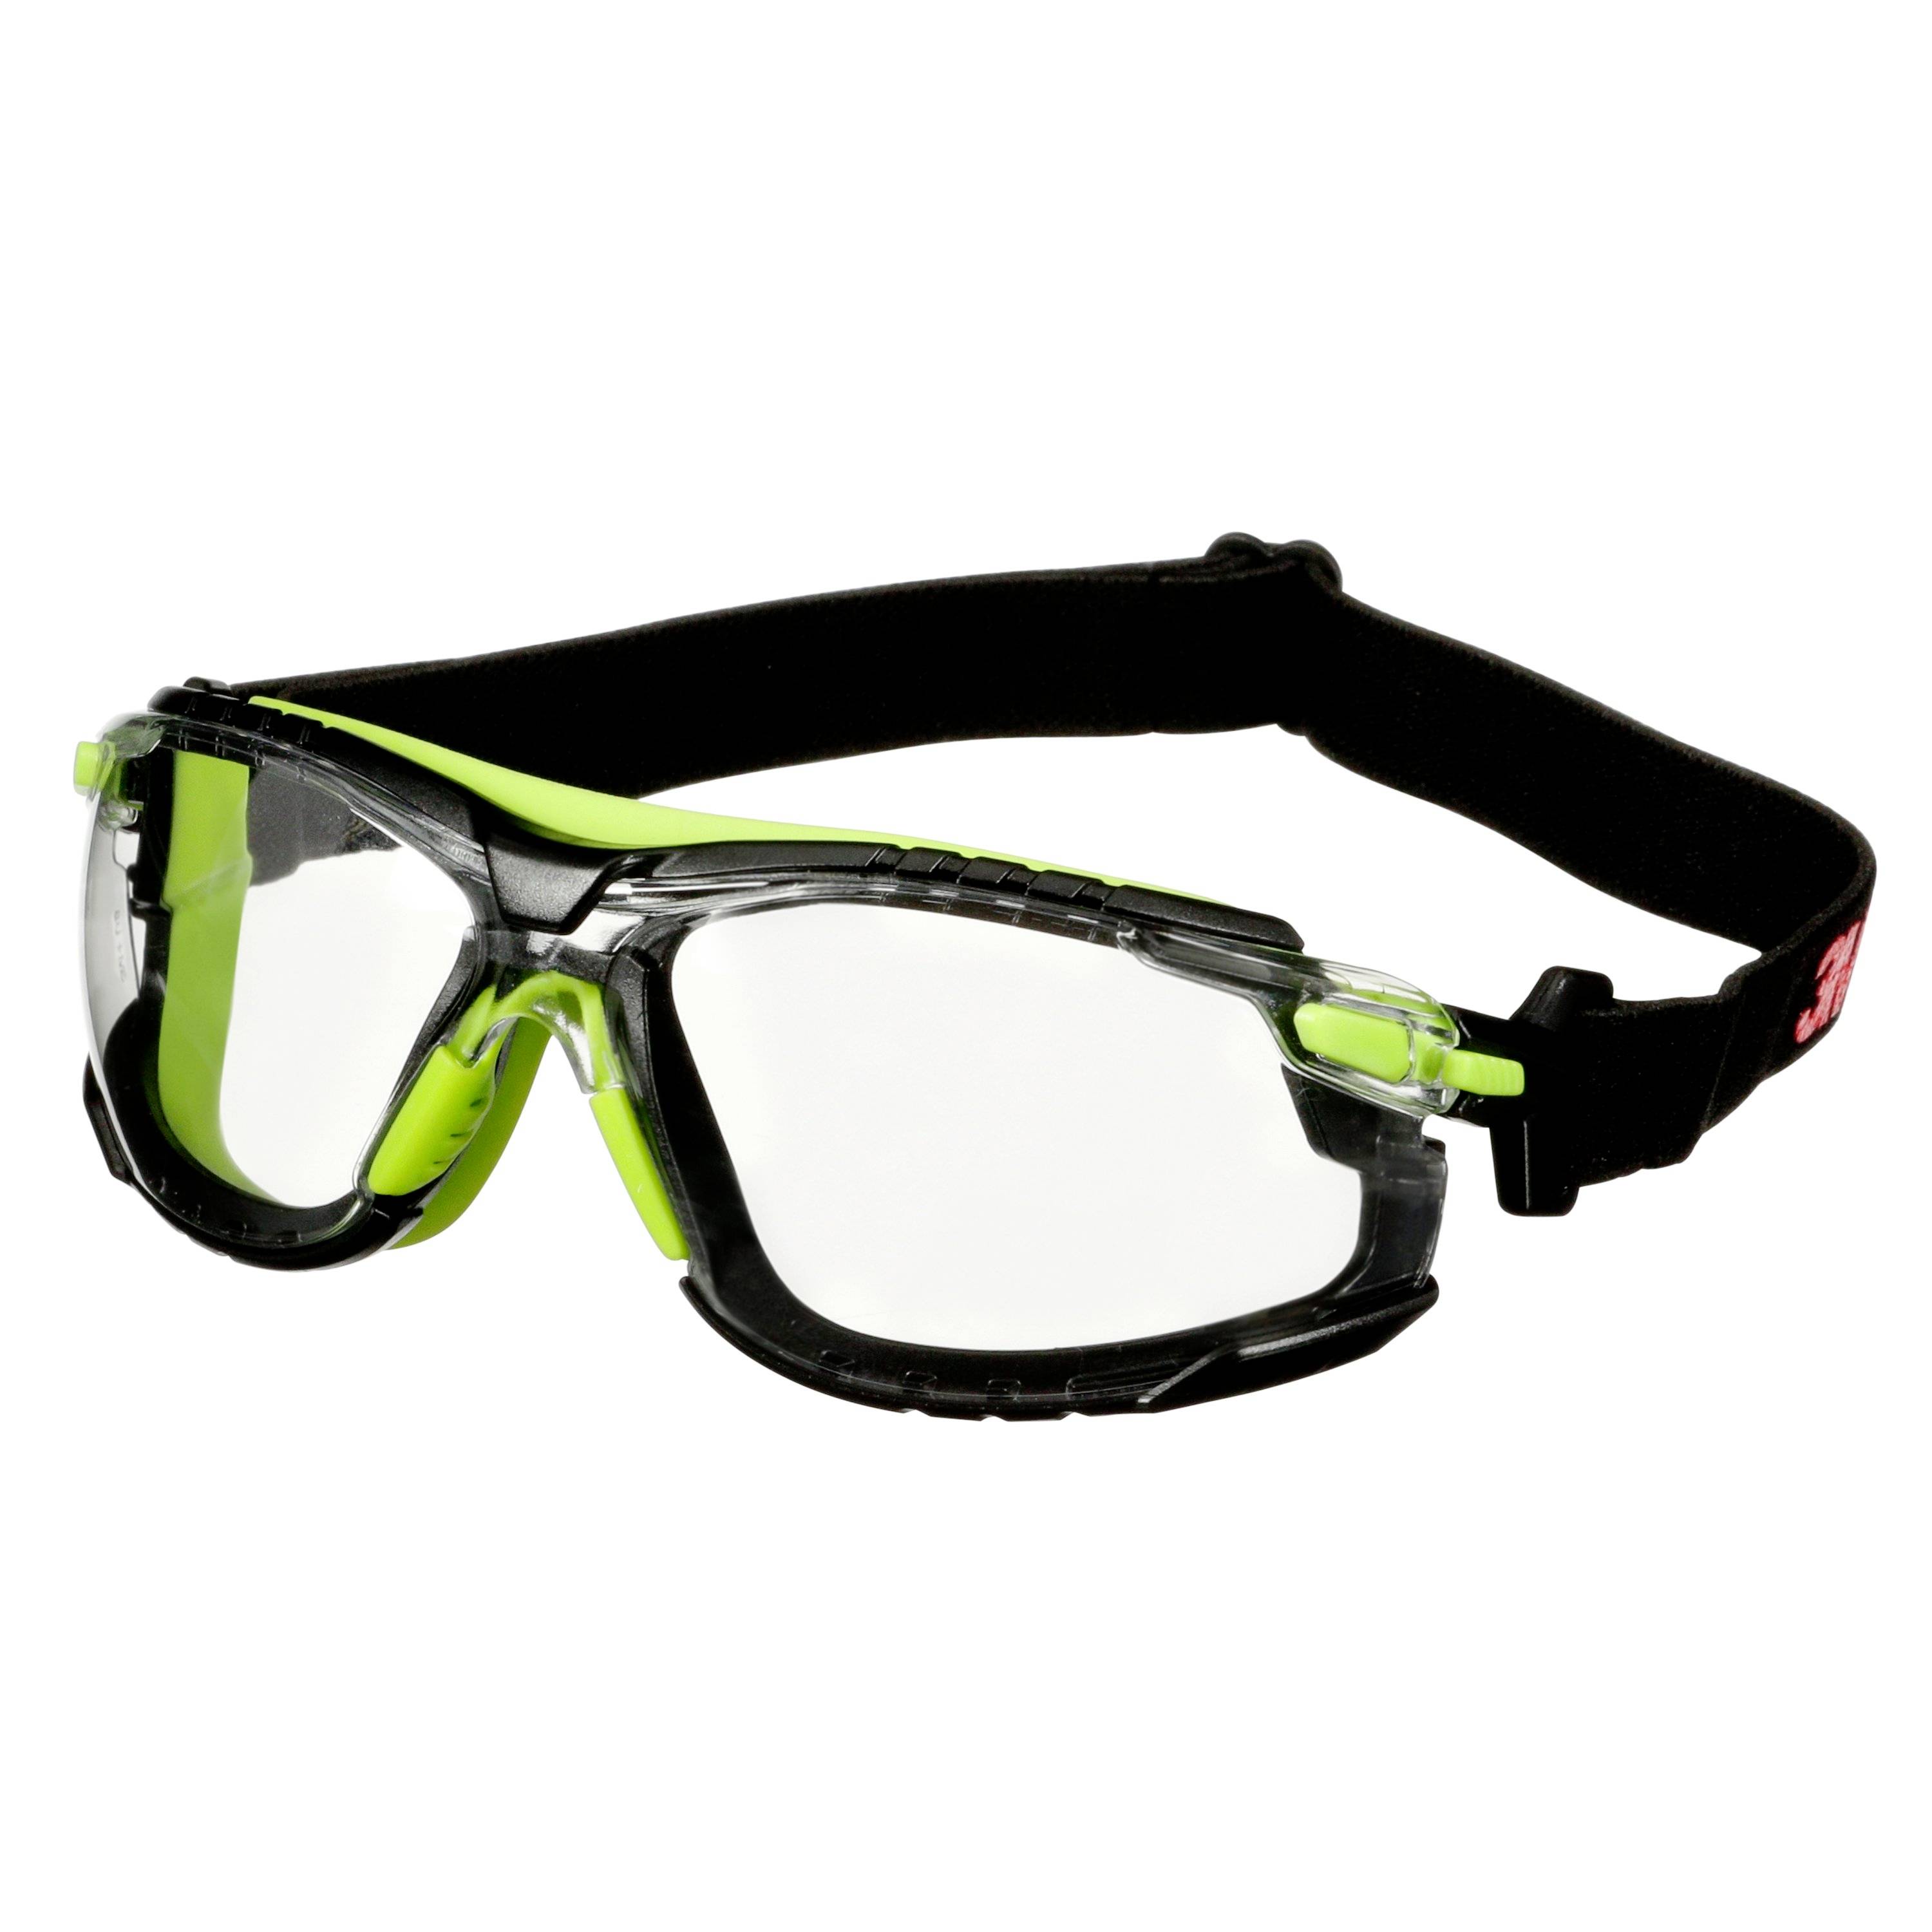 3M Solus S1201SGAF-TSKT Safety glasses Anti-fog coating Green, Black ...